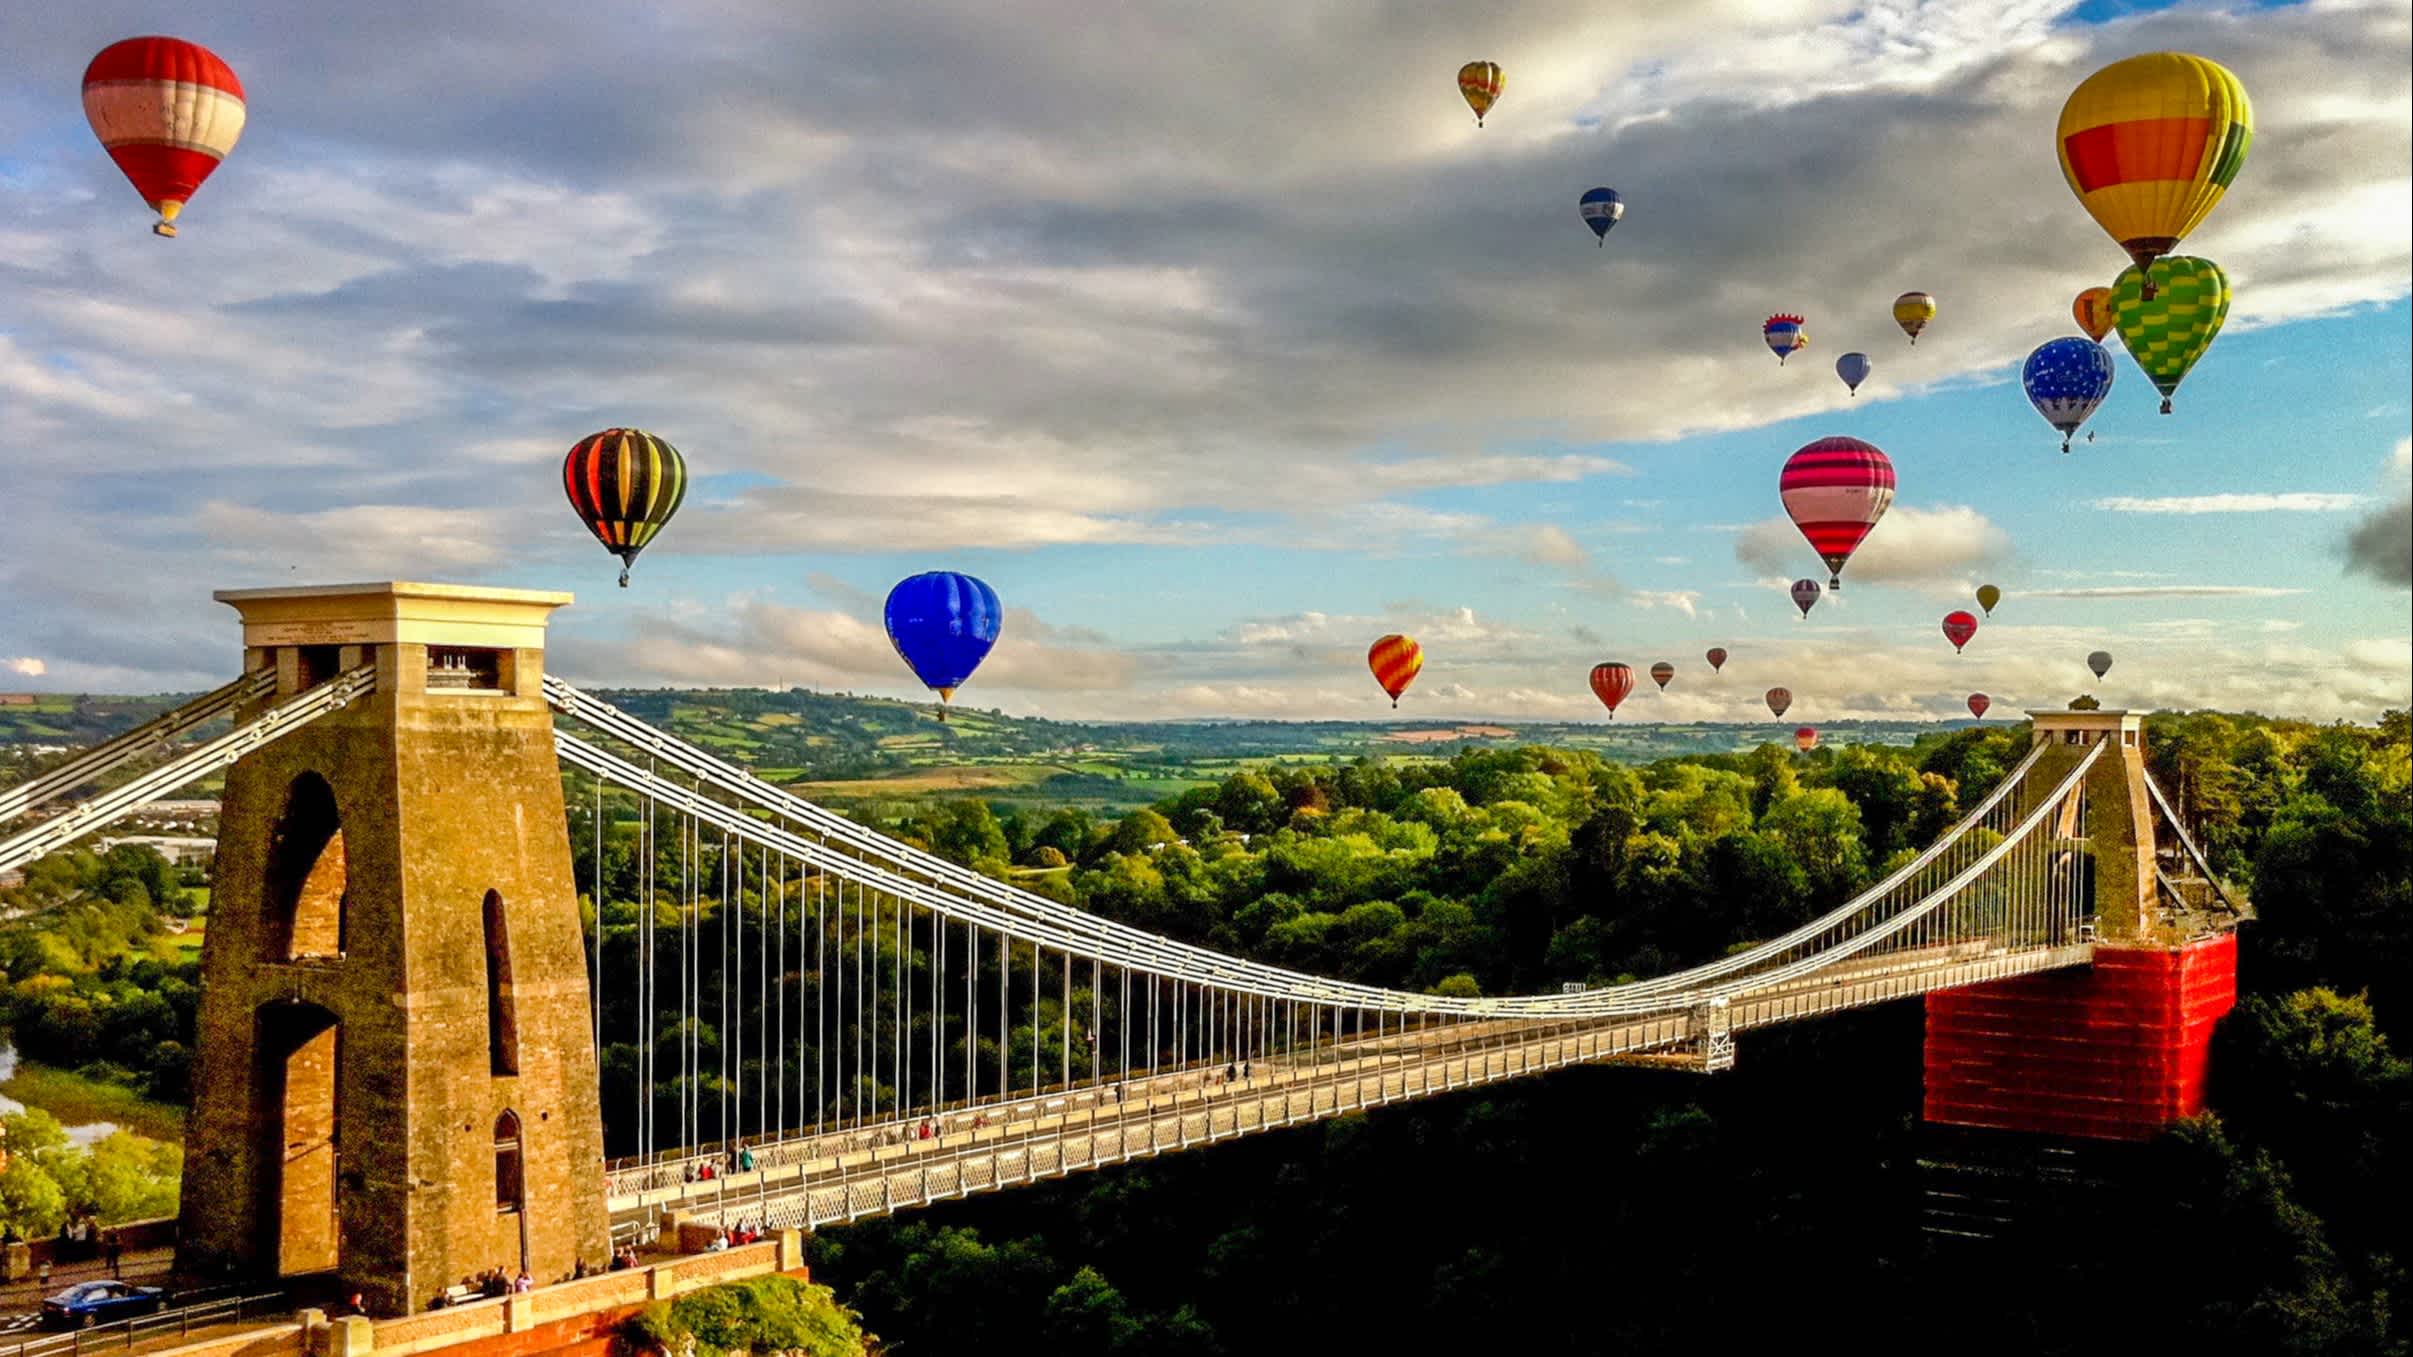 Heißluftballons über Hängebrücke in Bristol, England. 

